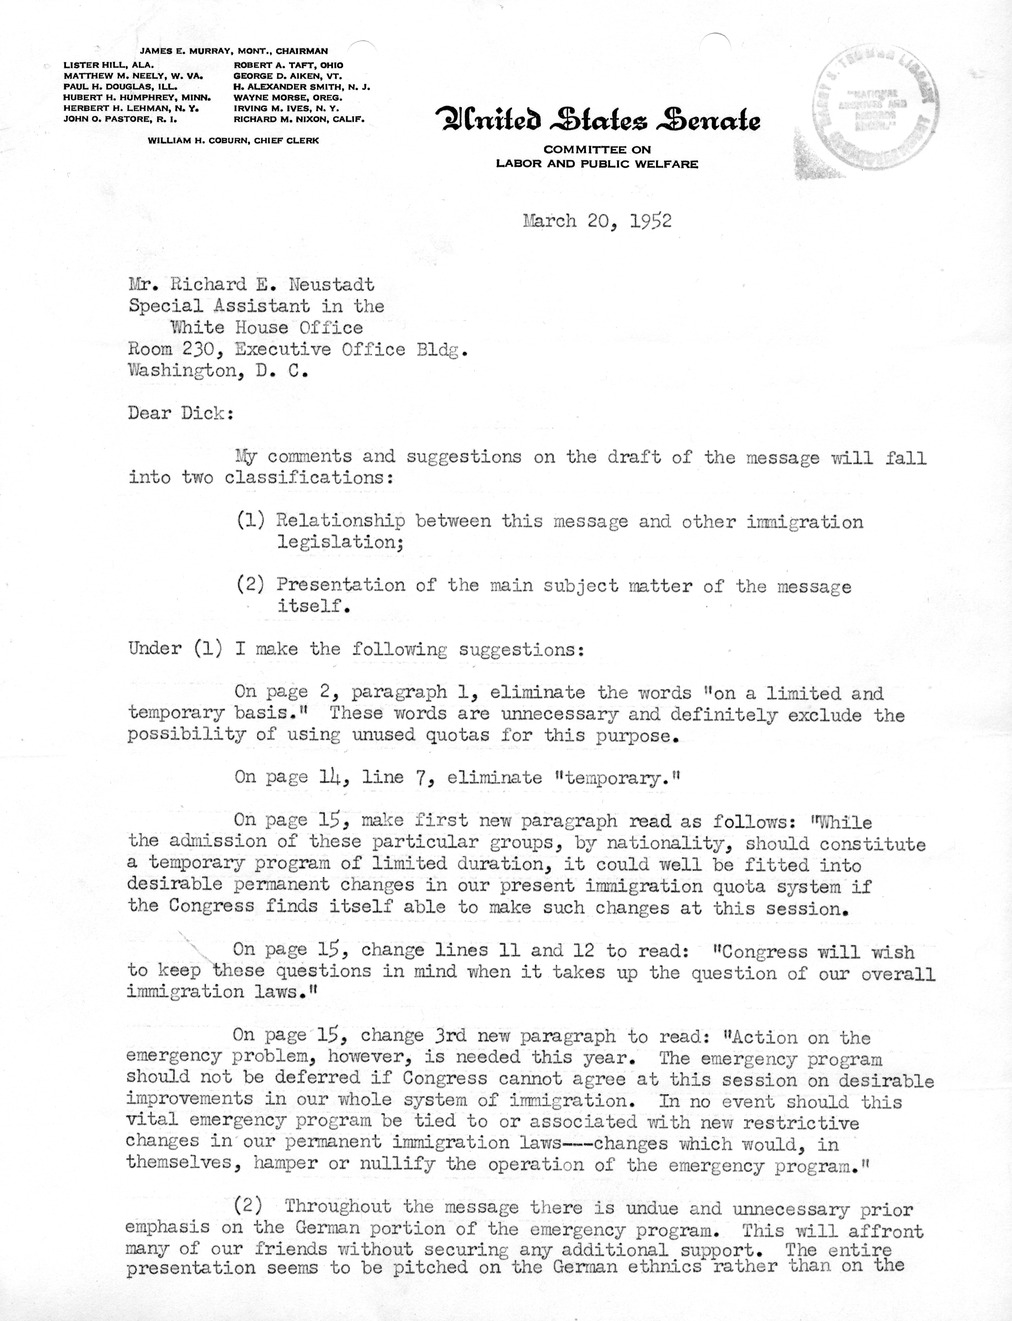 Letter from Julius Edelstein to Richard Neustadt